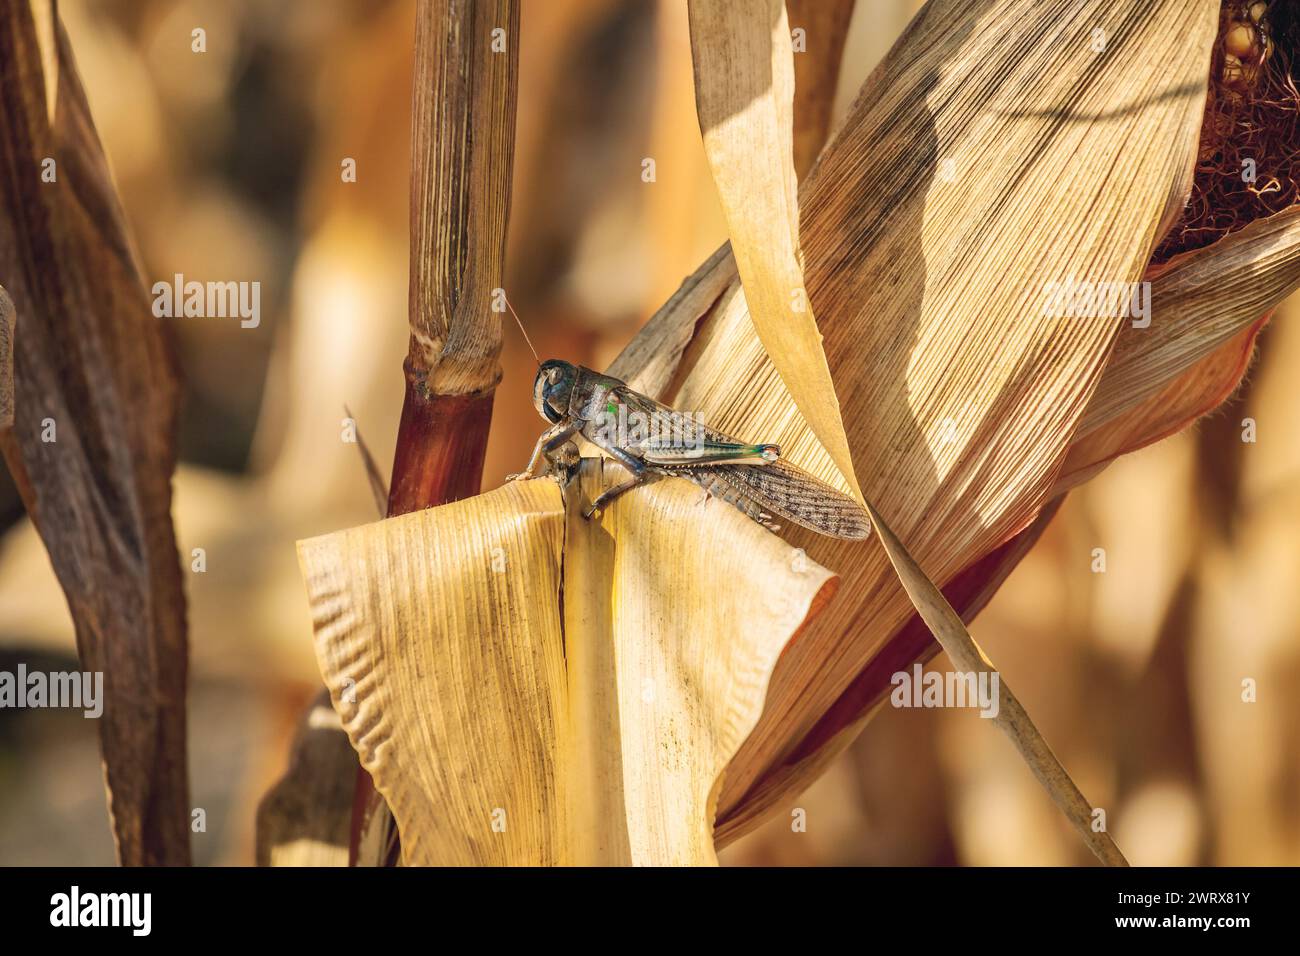 La grande locusta per campioni grigia-verde si appoggia su un pezzo di mais secco nel campo. Invasione di insetti, controllo dei parassiti in agricoltura. Foto Stock